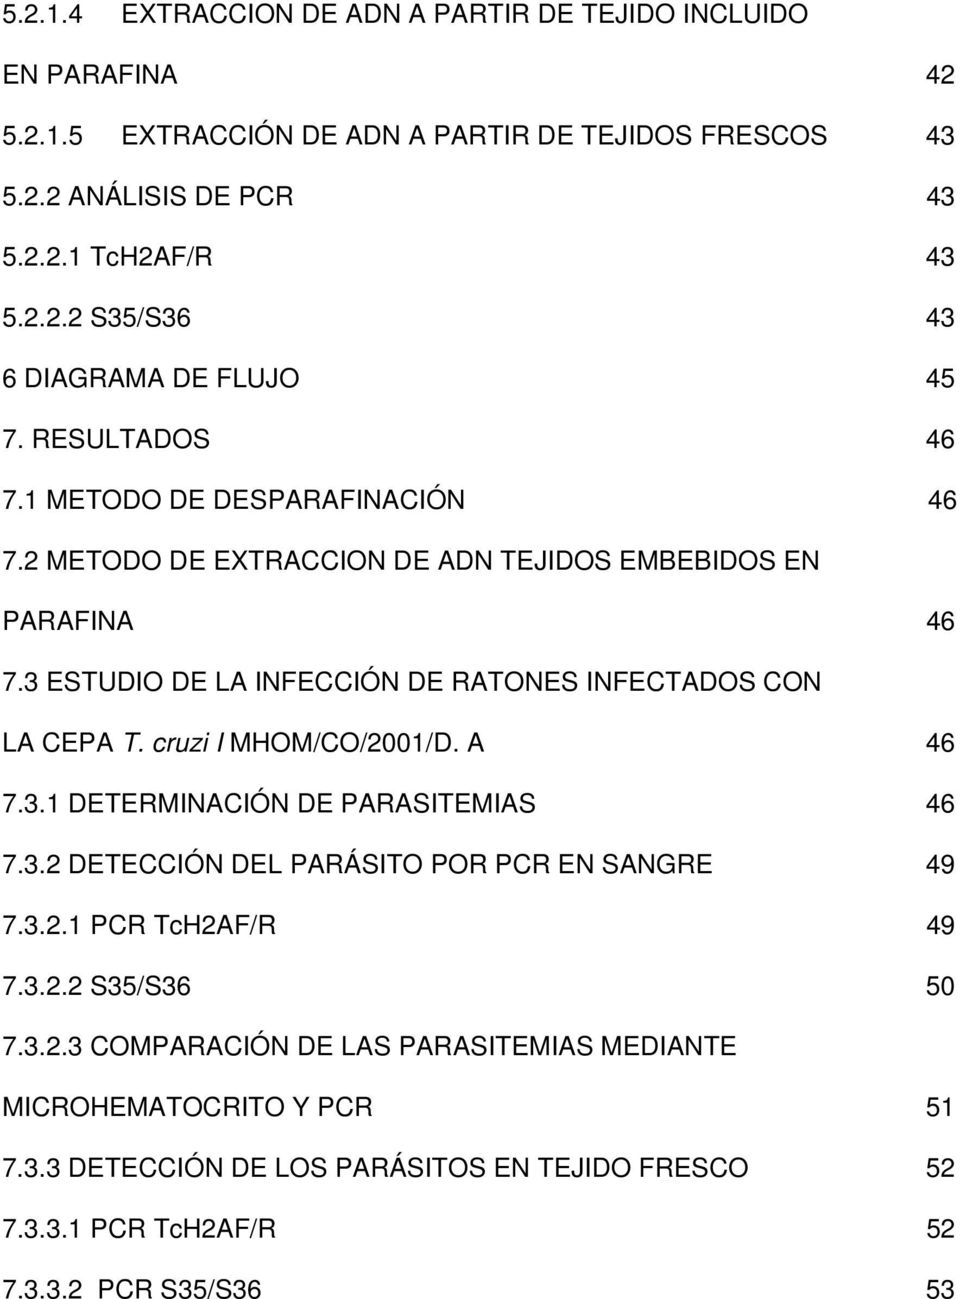 cruzi I MHOM/CO/2001/D. A 46 7.3.1 DETERMINACIÓN DE PARASITEMIAS 46 7.3.2 DETECCIÓN DEL PARÁSITO POR PCR EN SANGRE 49 7.3.2.1 PCR TcH2AF/R 49 7.3.2.2 S35/S36 50 7.3.2.3 COMPARACIÓN DE LAS PARASITEMIAS MEDIANTE MICROHEMATOCRITO Y PCR 51 7.